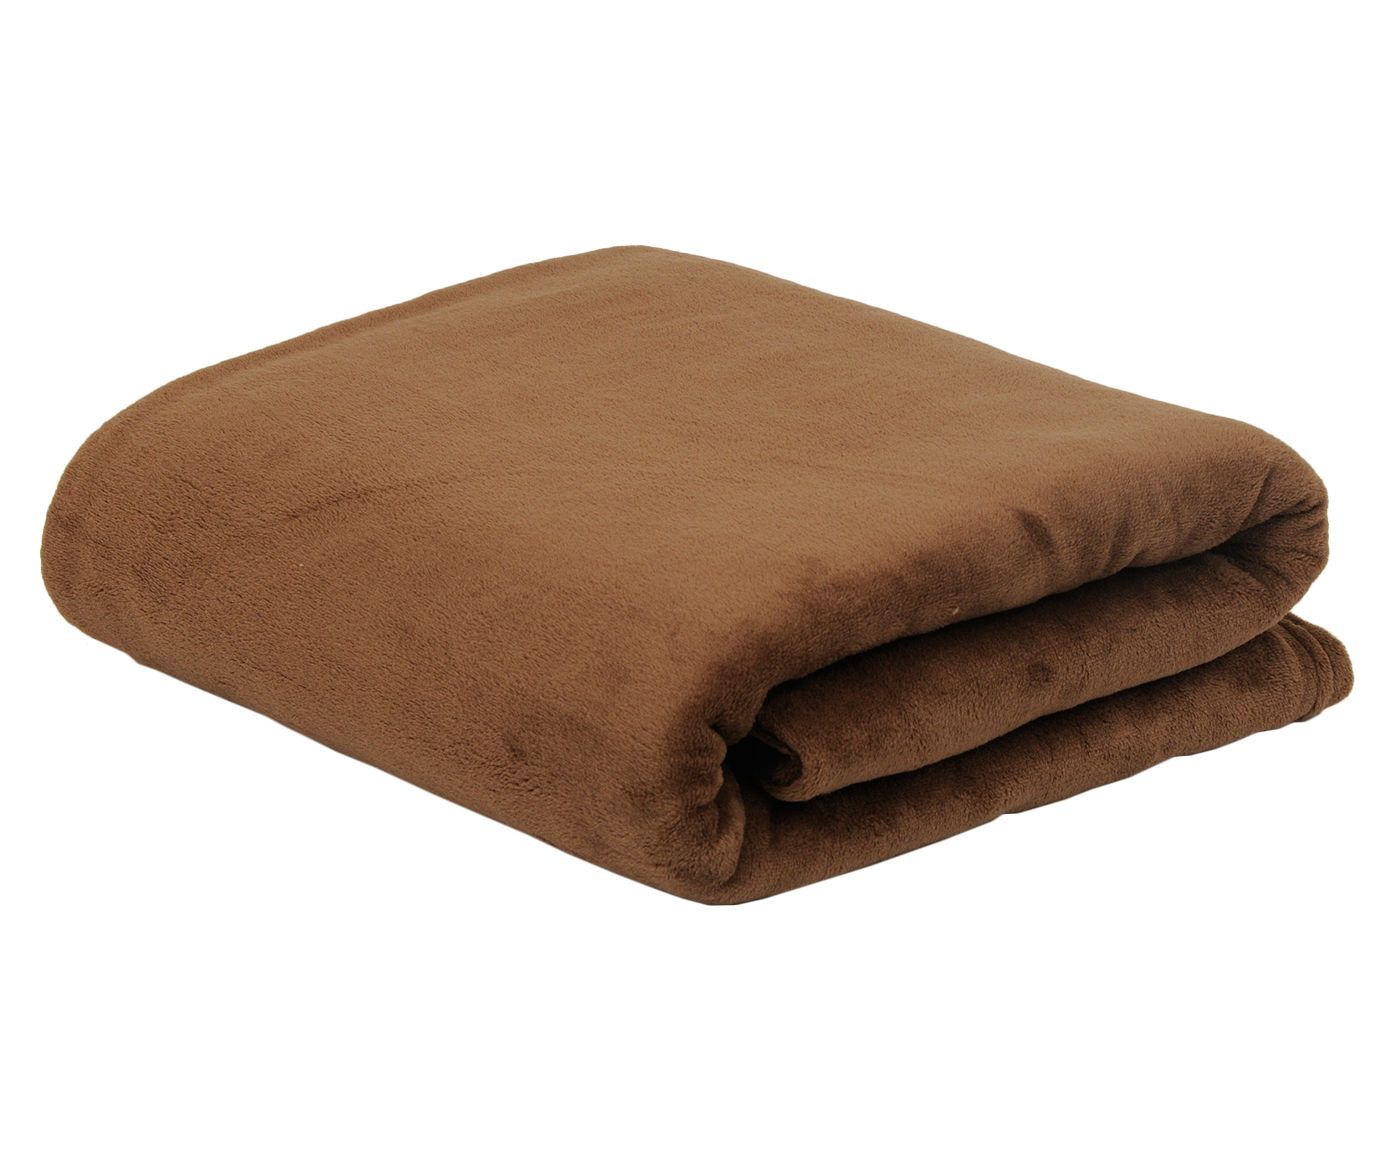 Cobertor mifra para cama de solteiro - sand - 150 x 200 cm | Westwing.com.br